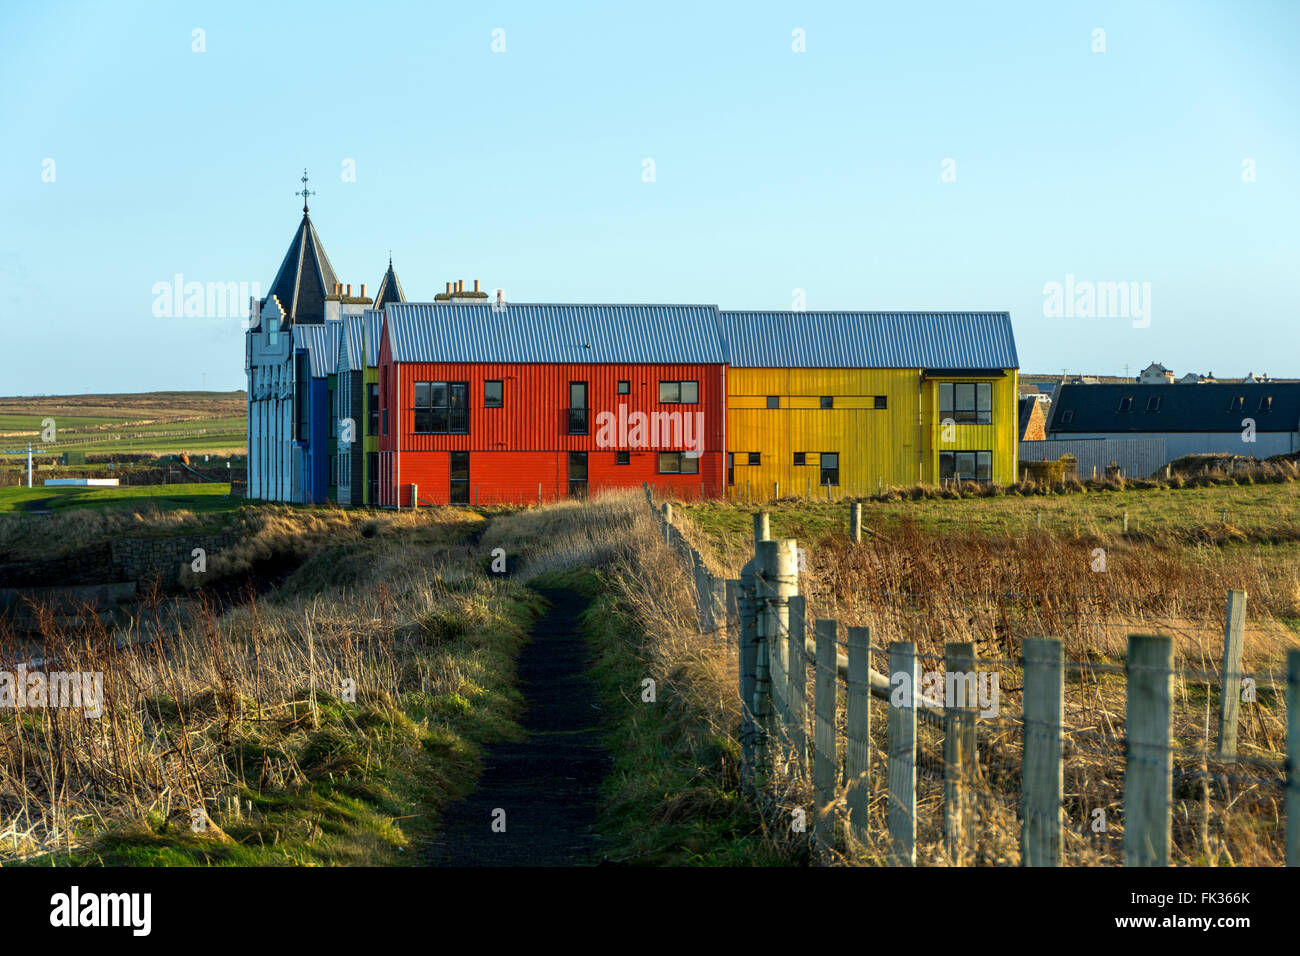 Le colorate casette della 'Inn a John O'semole', guardando ad est dalla costa percorso, Caithness in Scozia, Regno Unito Foto Stock